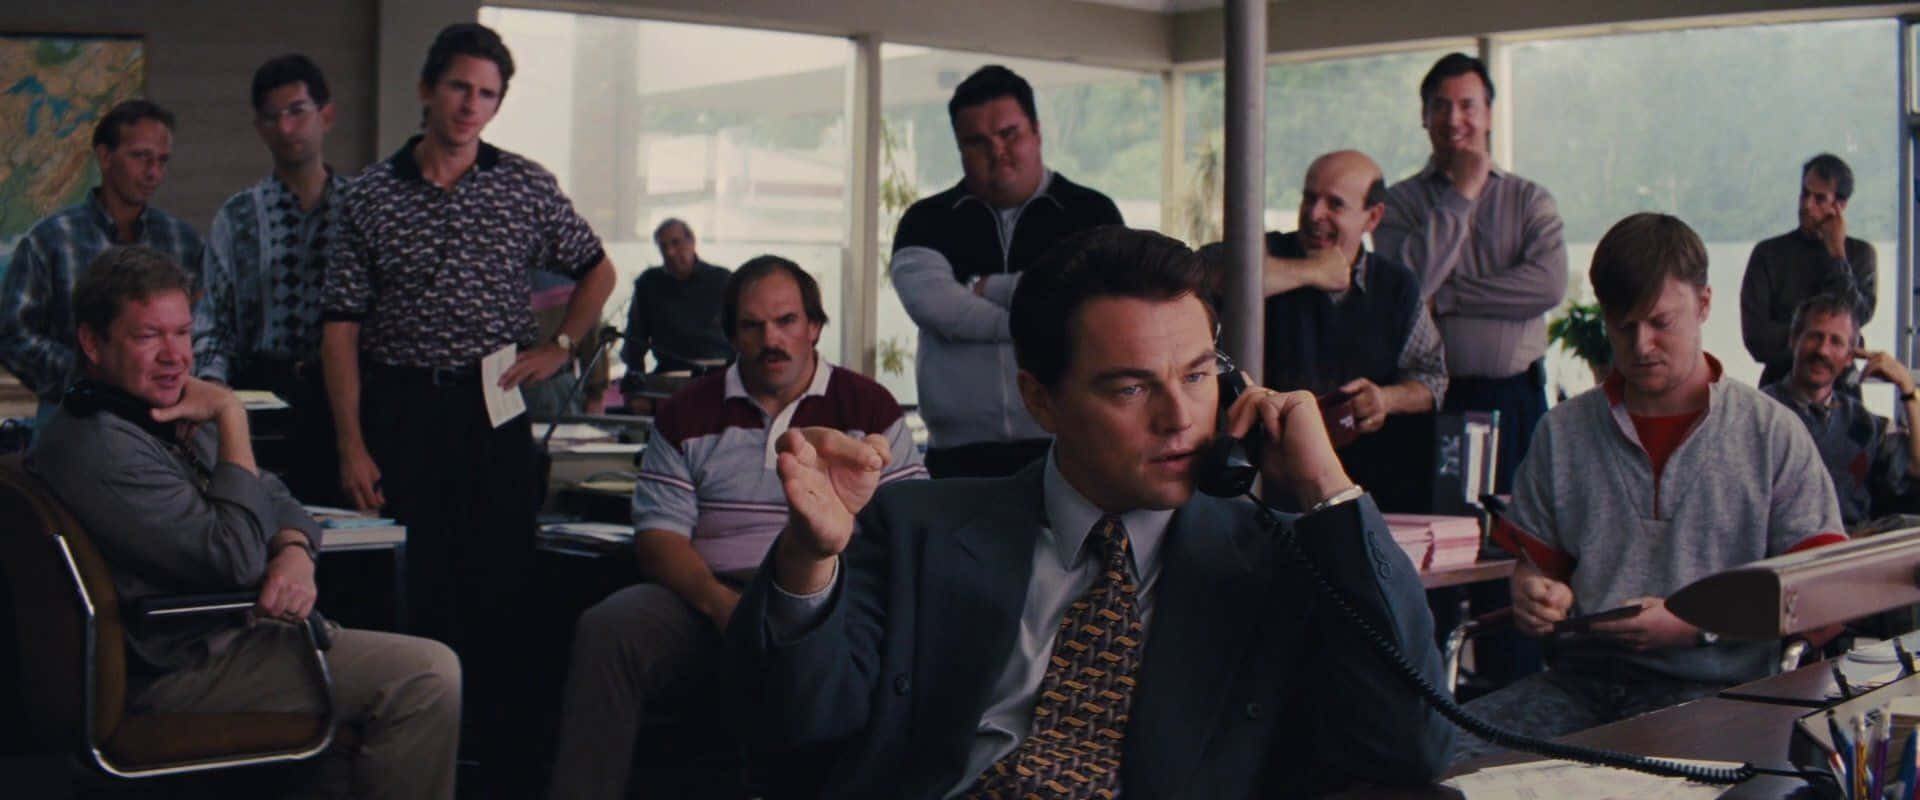 Leonardo DiCaprio spiller hovedrollen som Jordan Belfort i The Wolf Of Wall Street. Wallpaper